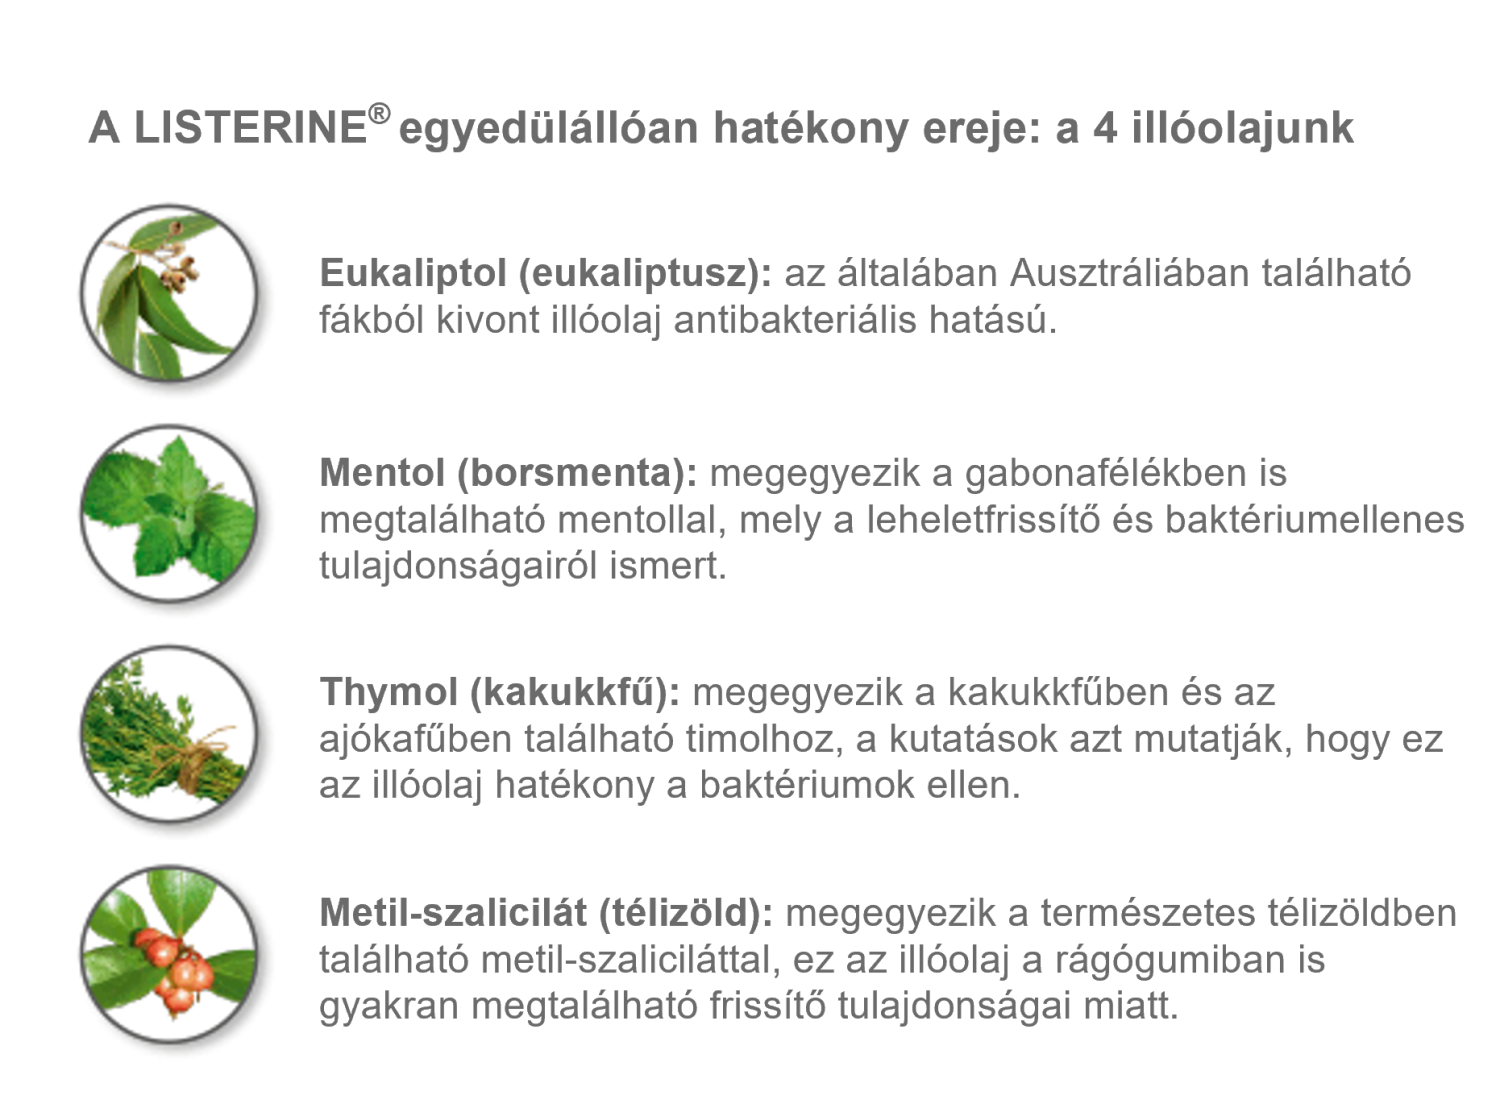 Listerine szájvíznek 4 illóolaj az alapja. Ezek az eukaliptol (eukaliptusz), a mentol (borsmenta), thymol (kakukkfű) és metil-szalicilát (télizöld).